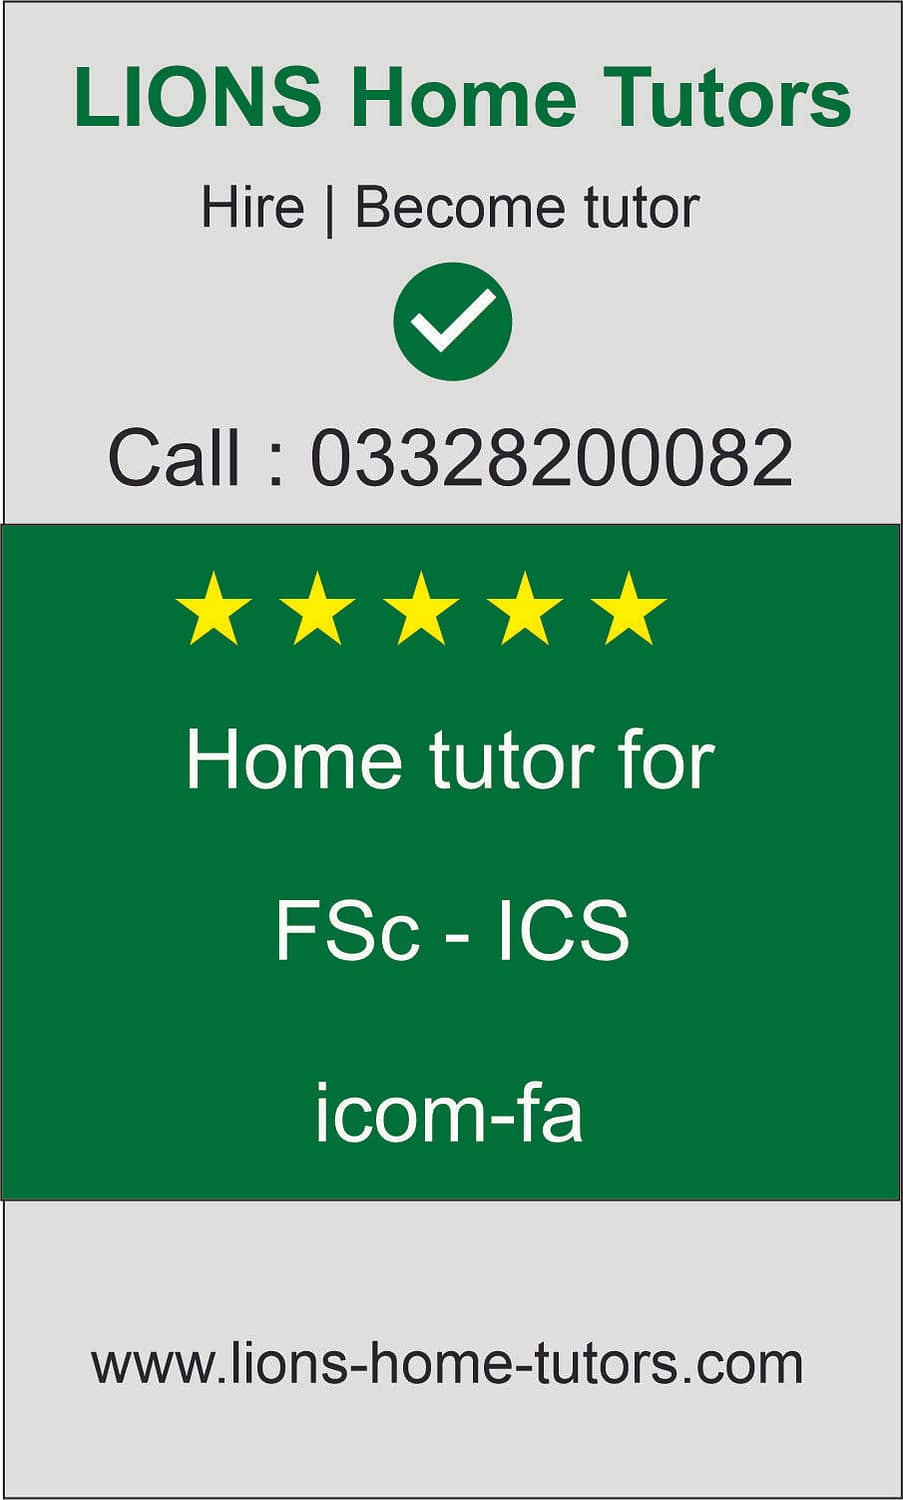 home tutor for fsc-ics-icom-fa